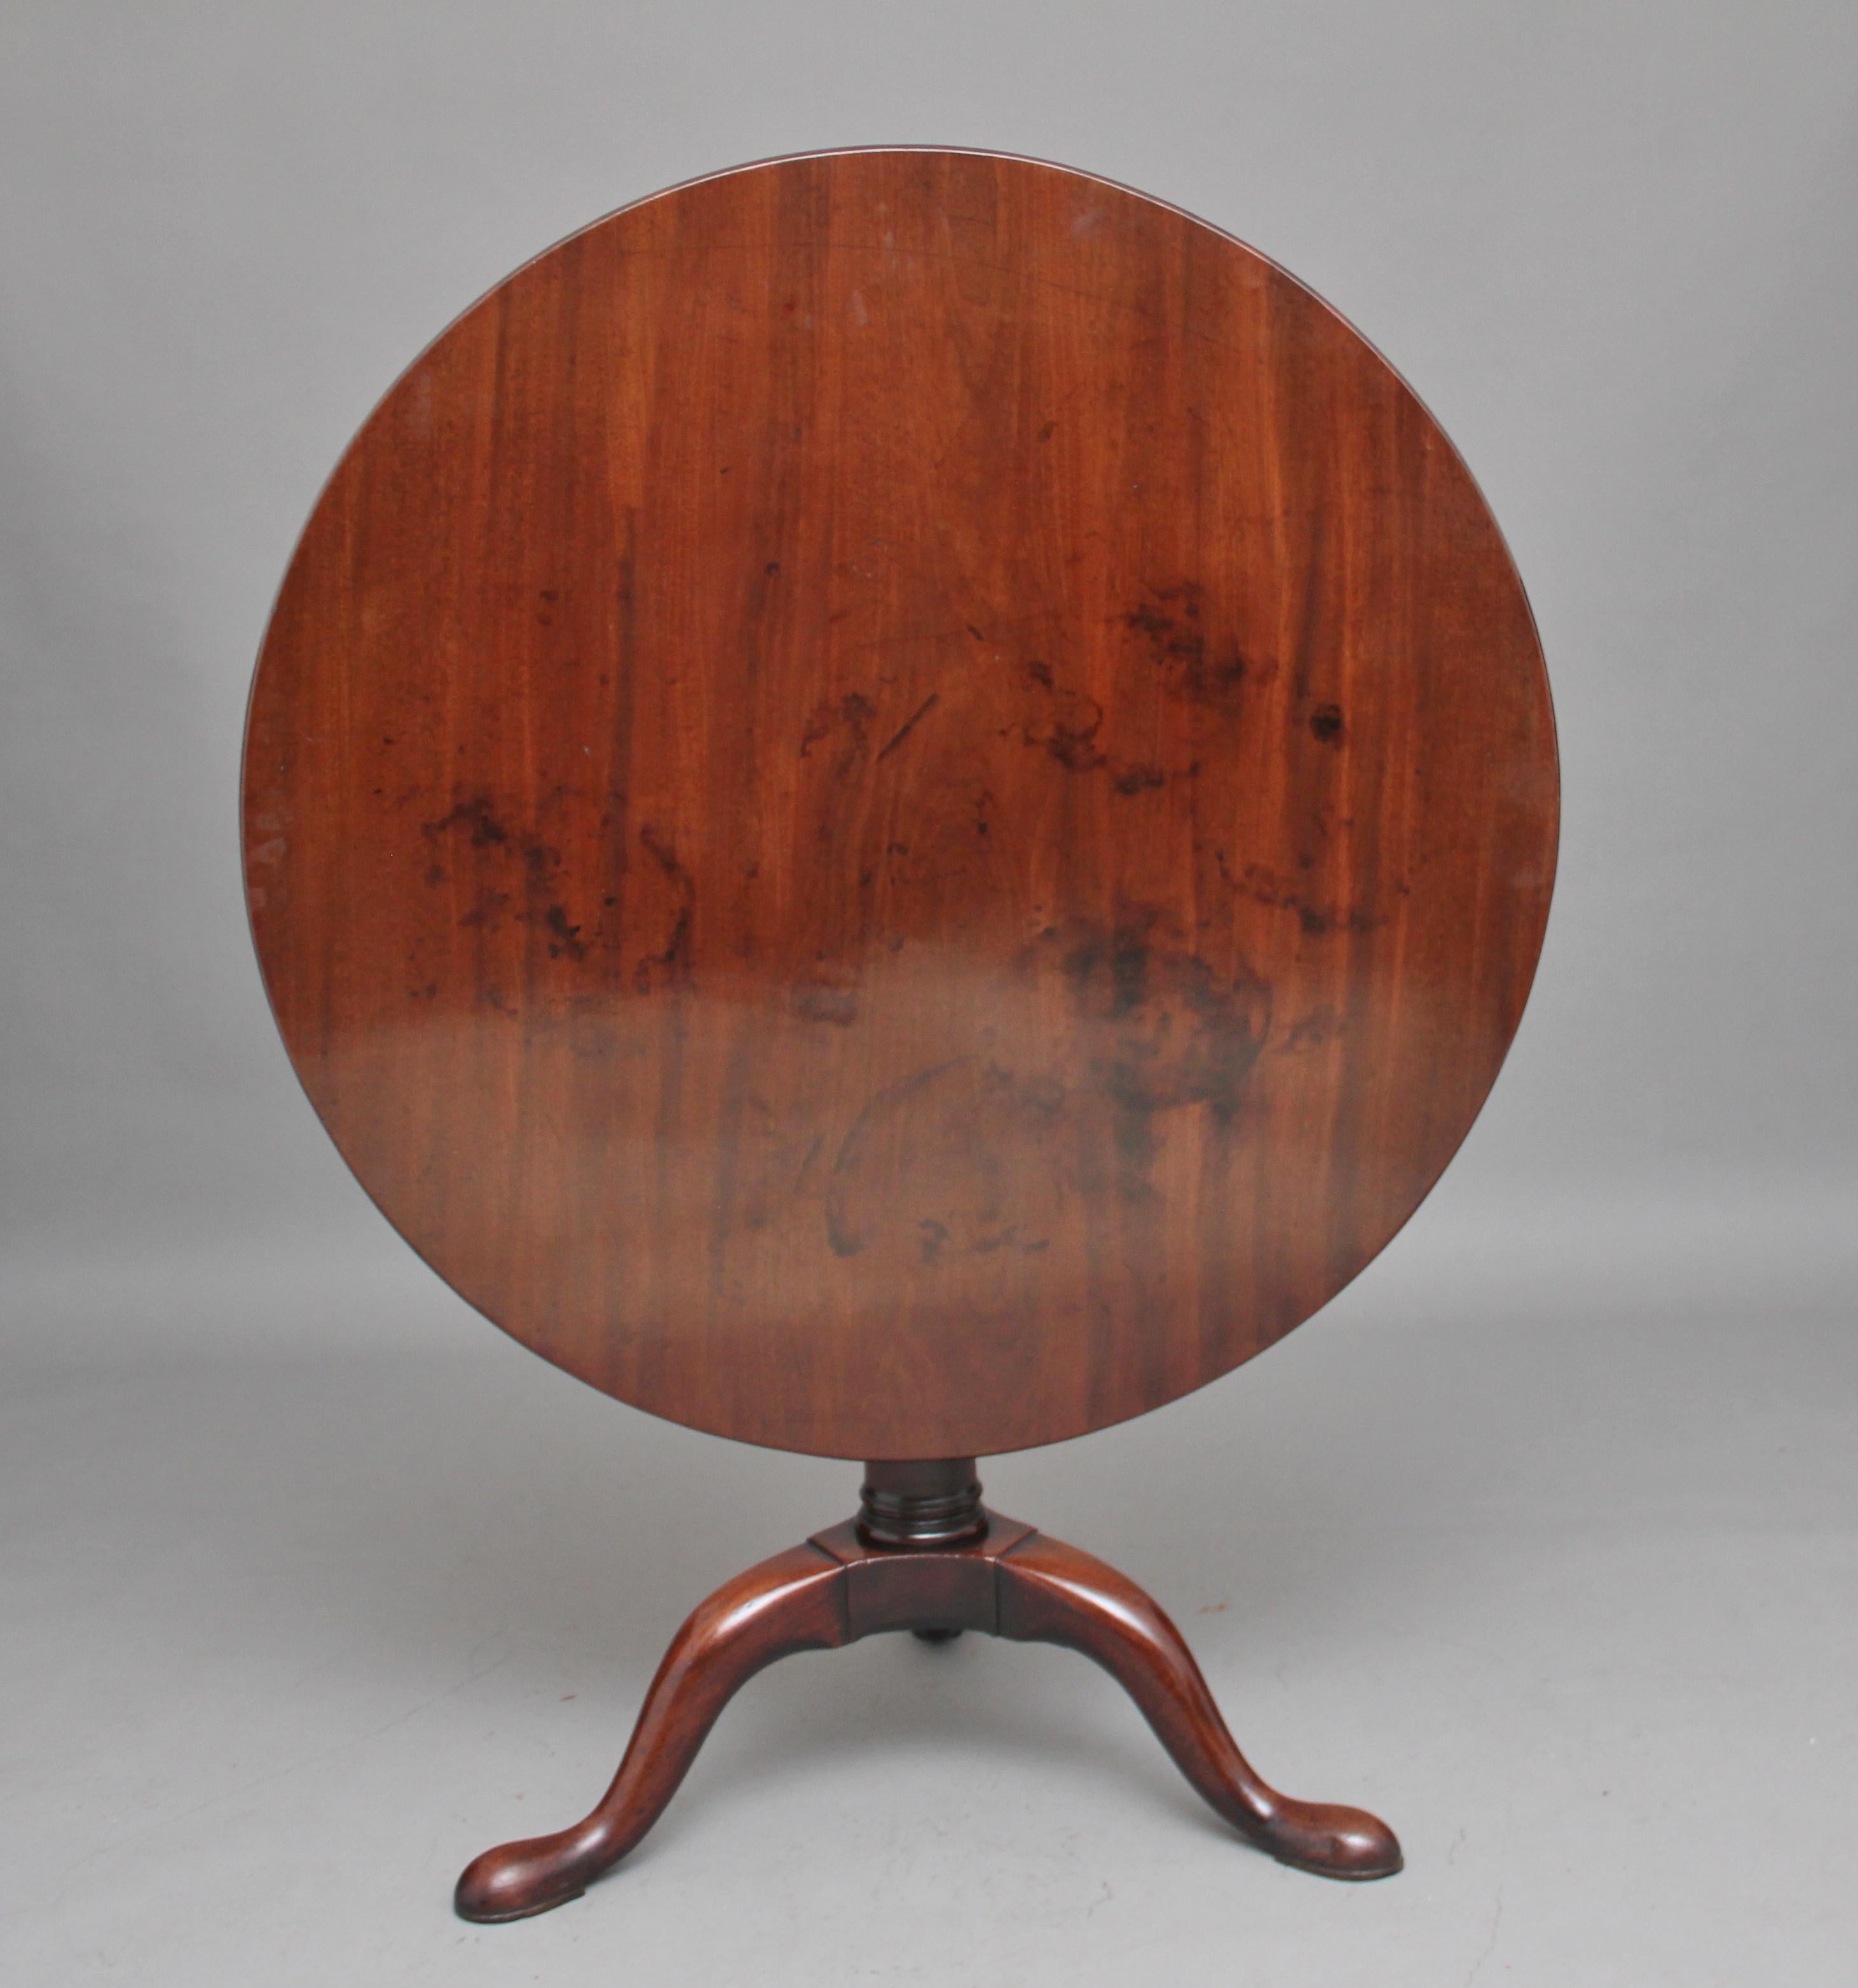 mahagoni-Dreibein-Tisch des 18. Jahrhunderts mit großen Proportionen, die runde Mahagoni-Platte sitzt auf einer Vogelkäfig-Halterung, so dass man die Platte drehen kann, ohne die Basis zu drehen, gestützt auf eine gedrehte Säule, die mit drei